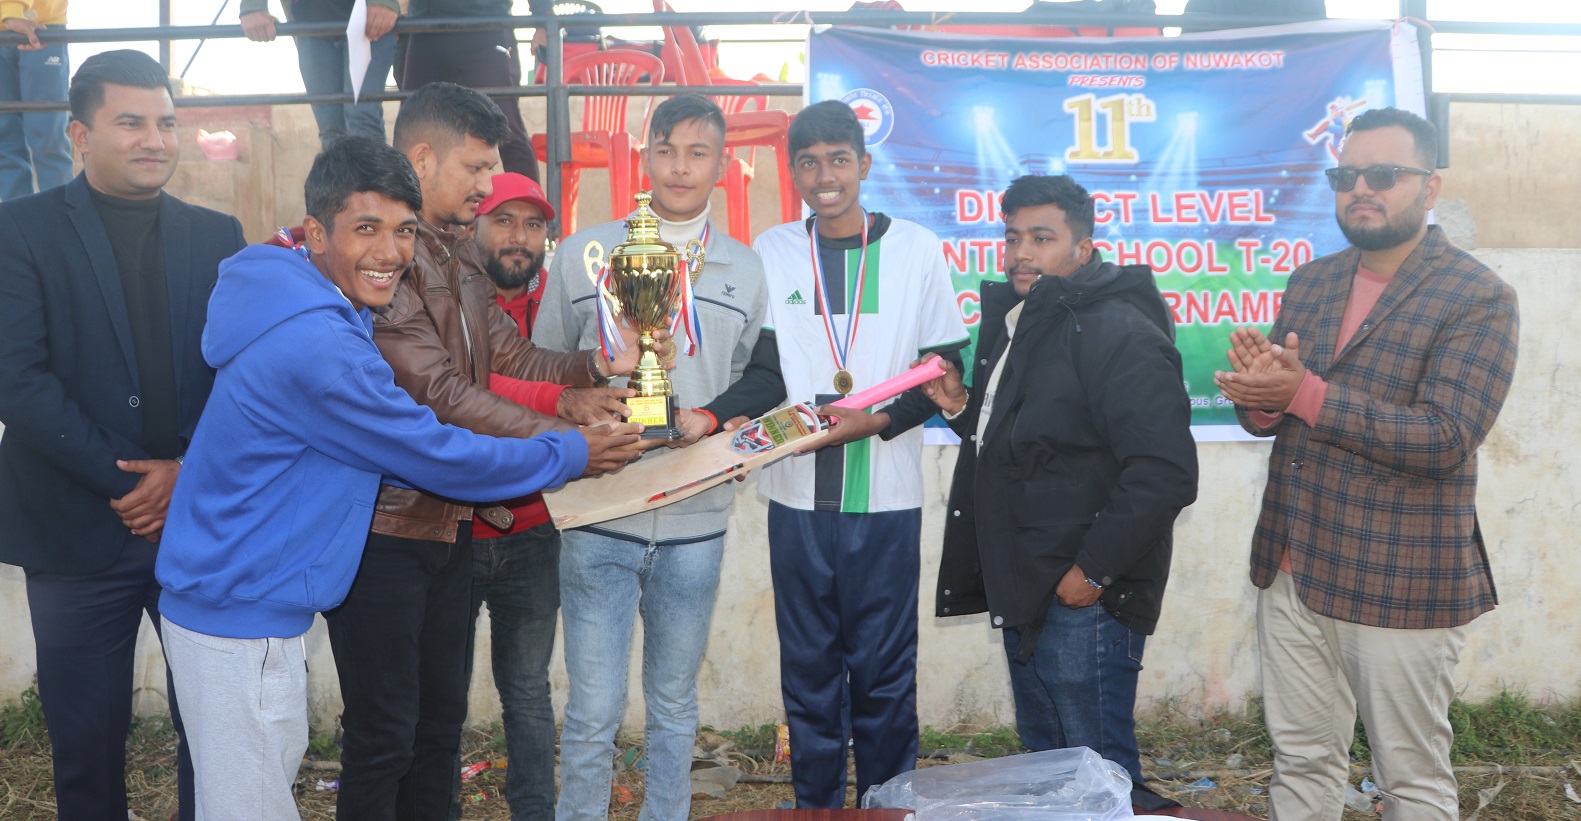 tribhuwan trishuli secondary school win interschool level t-20 cricket tournament in nuwakot